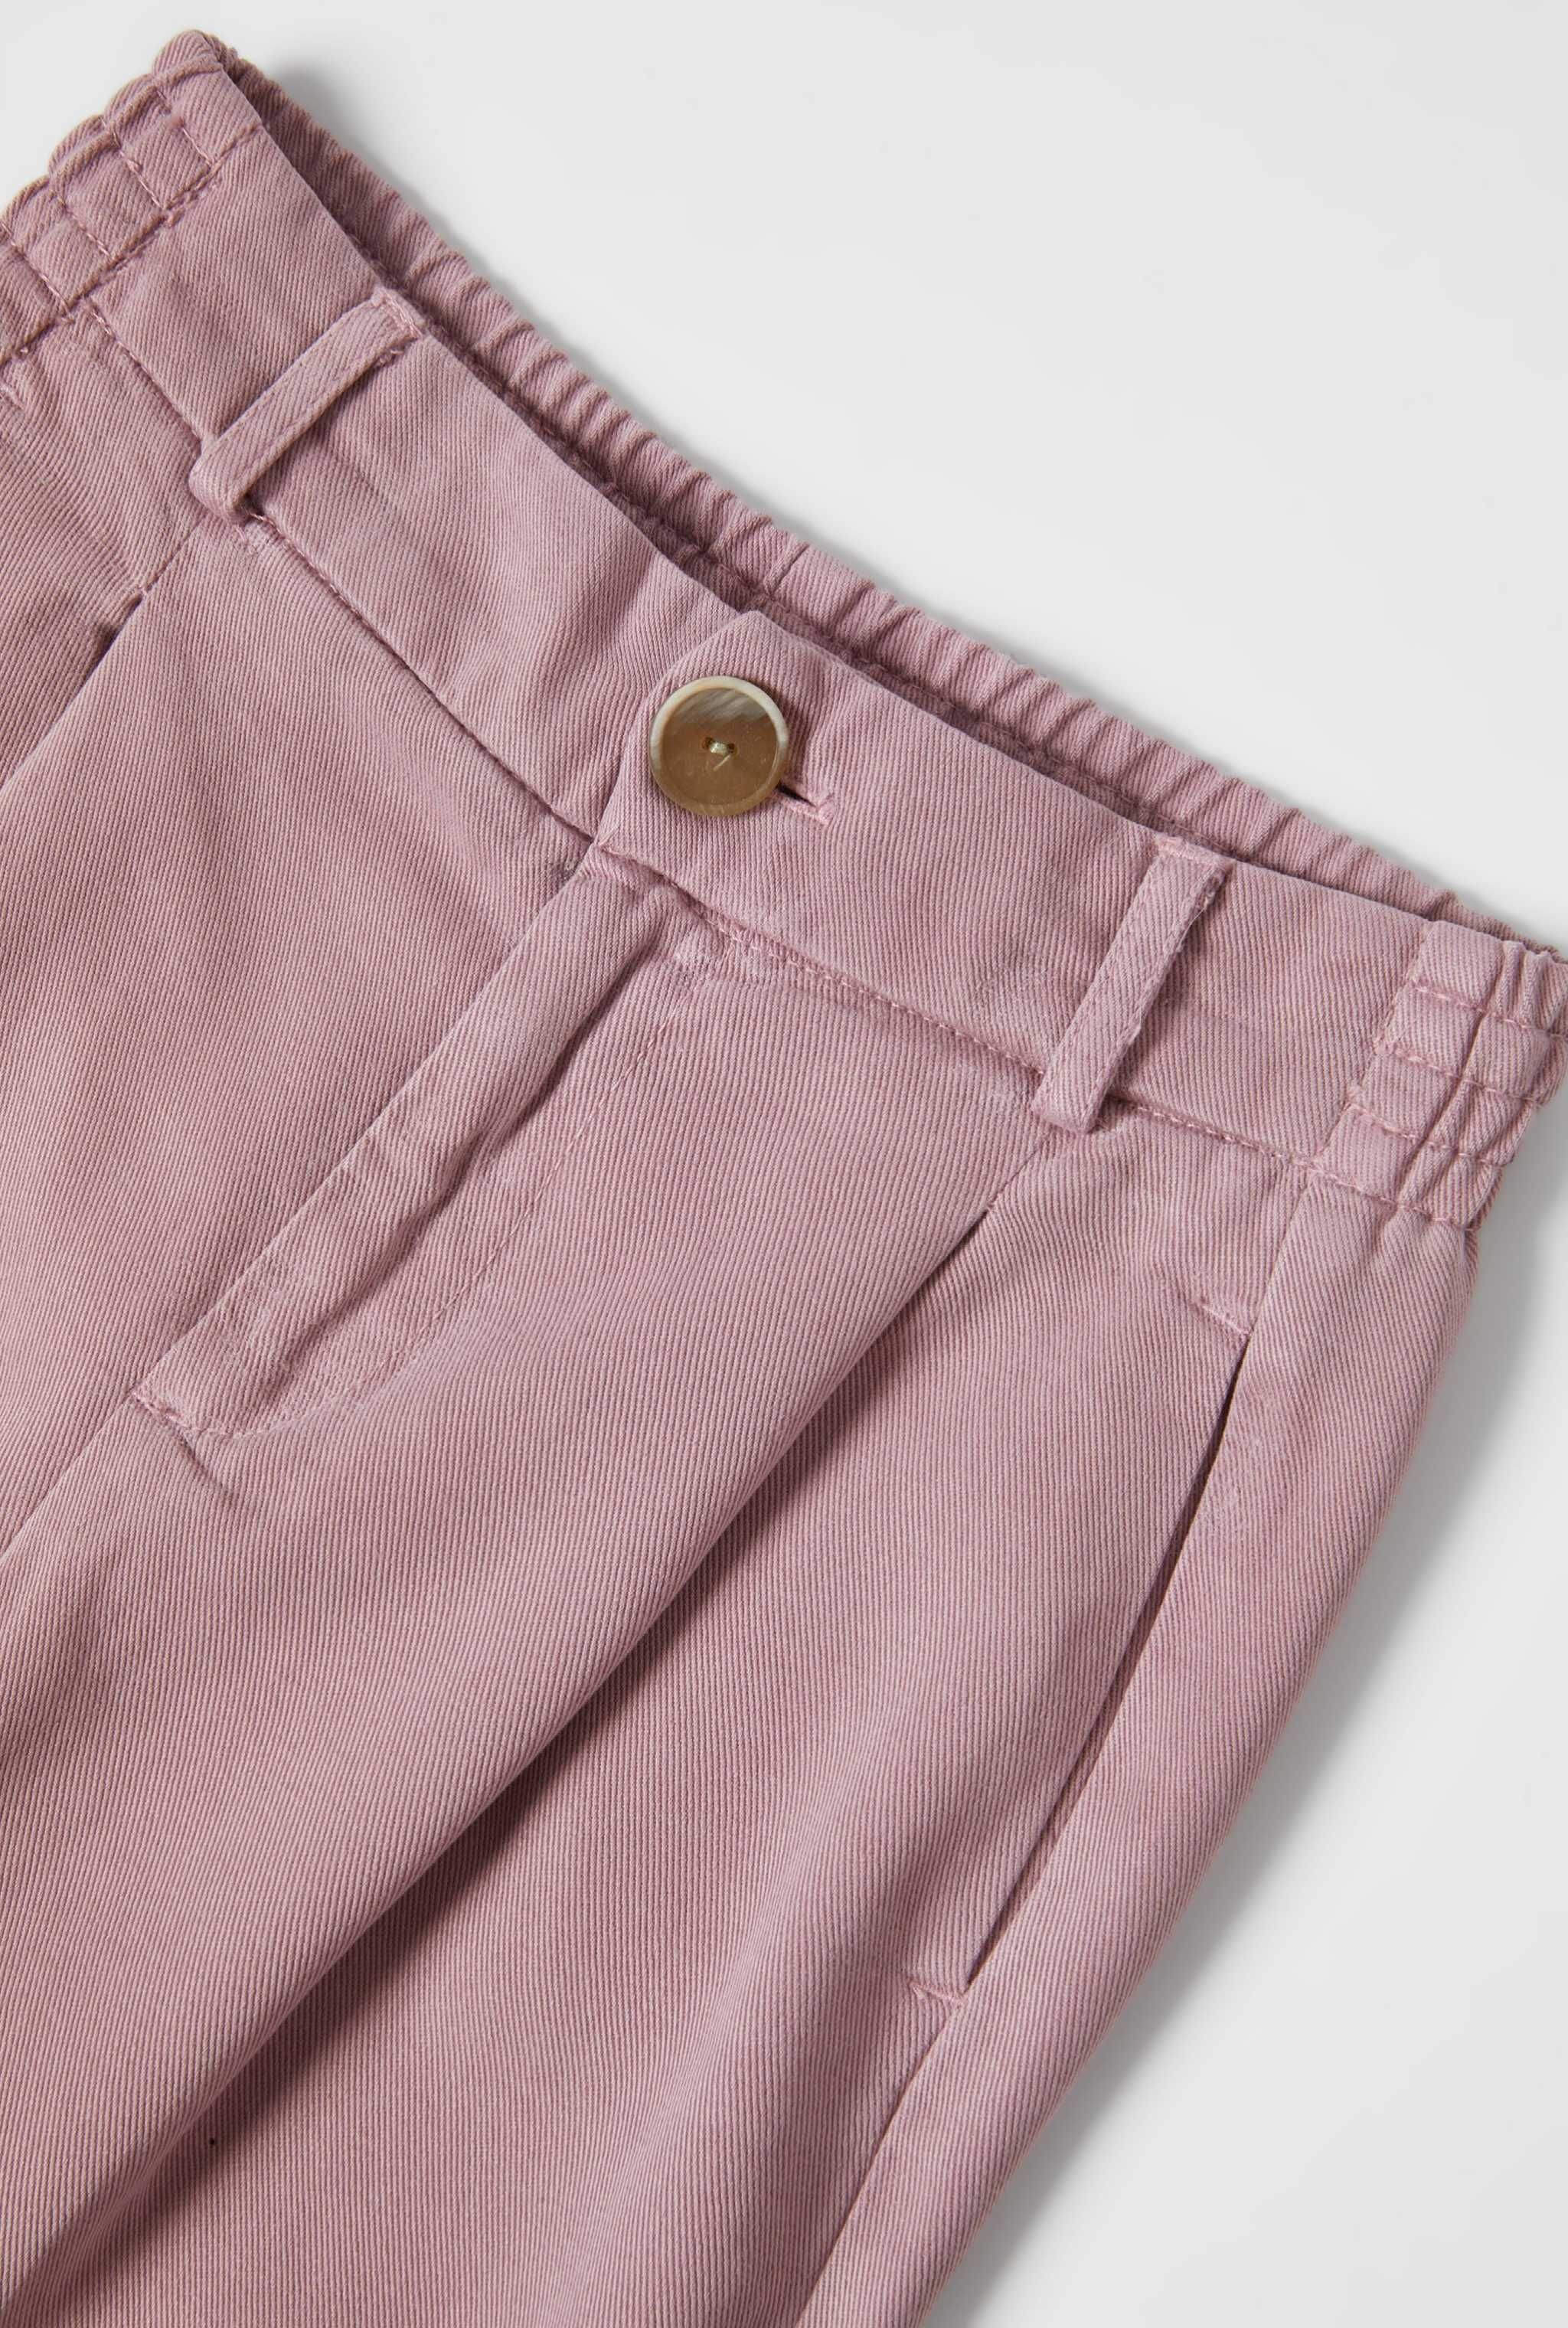 Класичні вільні широкі штани Zara, классические свободные брюки зара